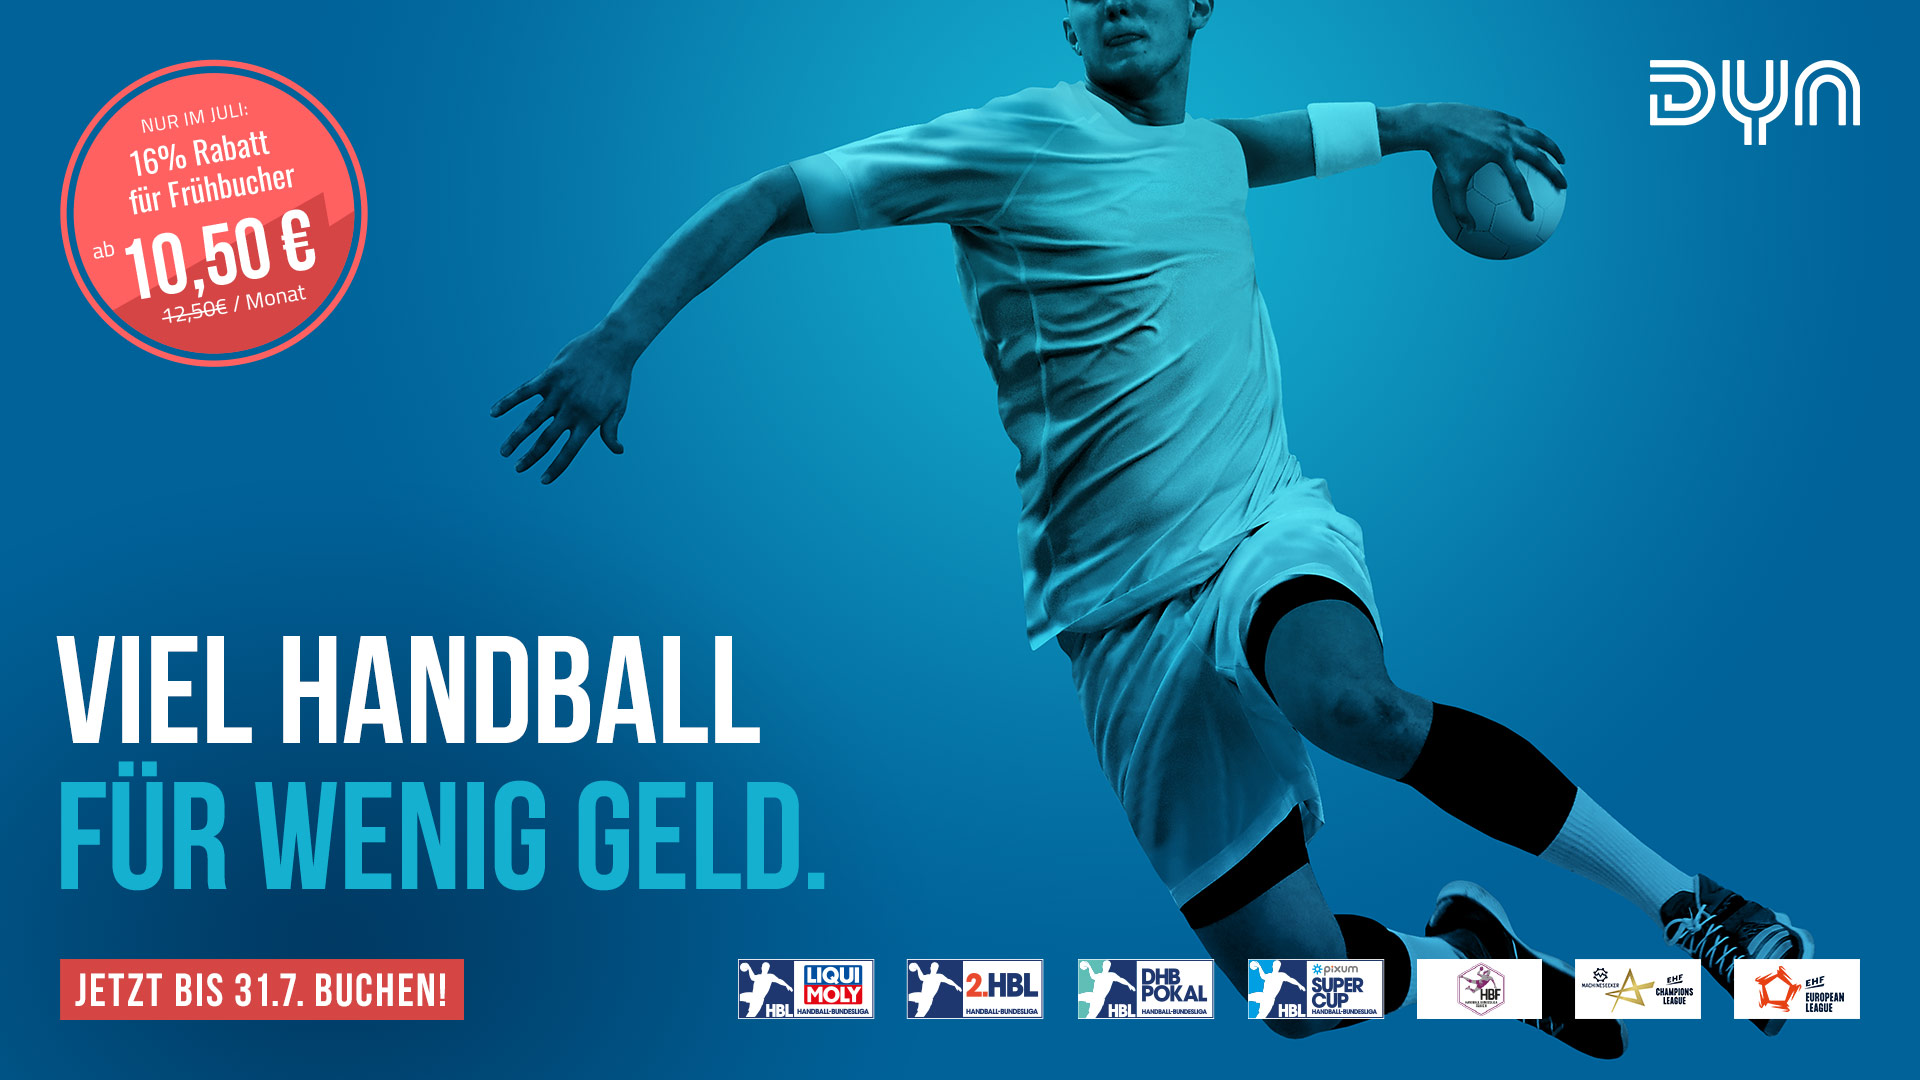 Dyn-App auf Receiver Sky bietet seinen Kunden Handball zum